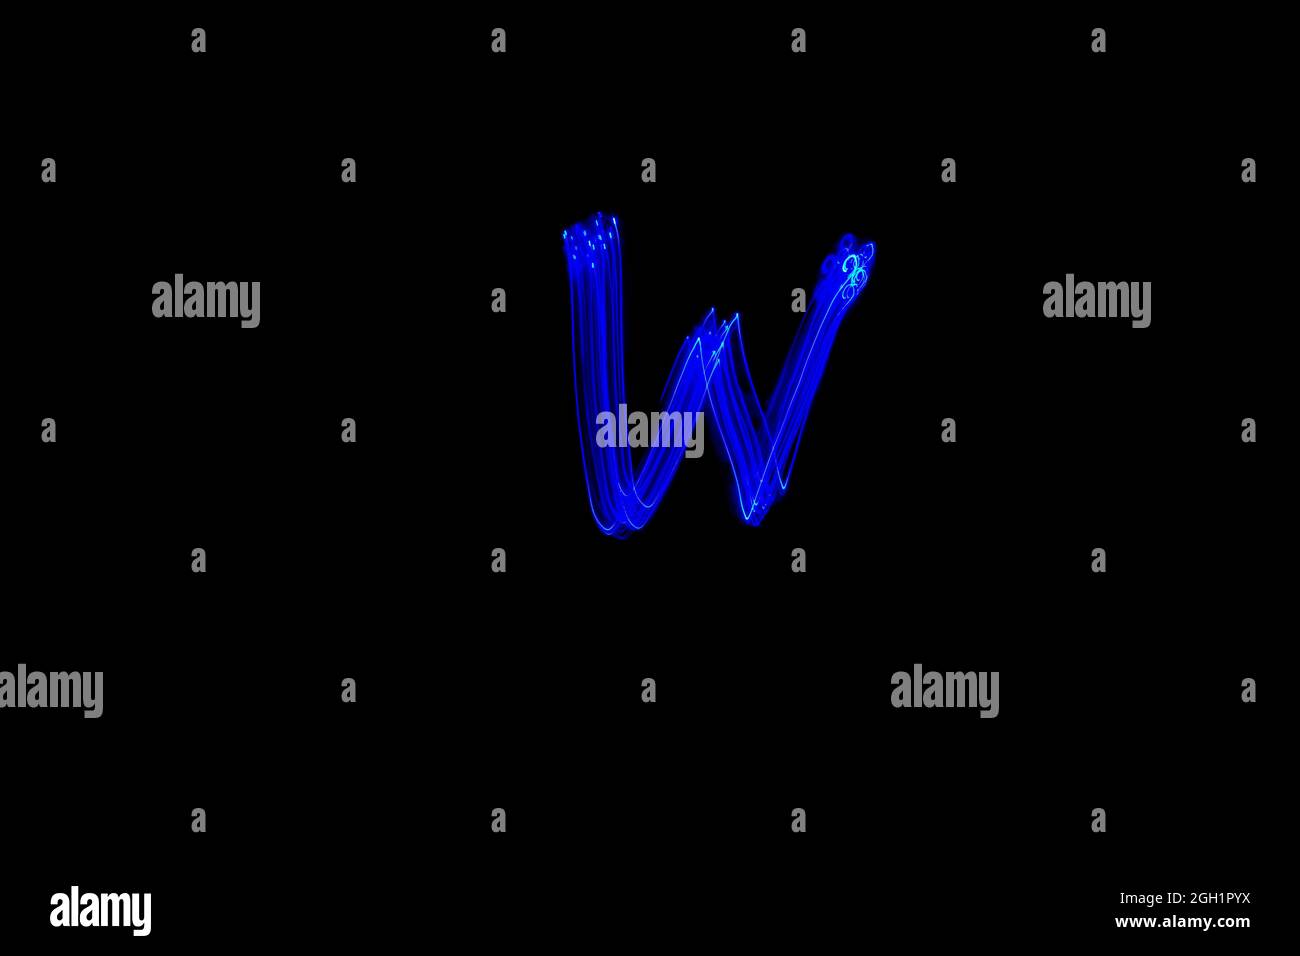 Lettre W. lettre de peinture alphabet clair. Photographie en exposition prolongée. Lettre W dessinée avec des lumières bleues sur fond noir. Banque D'Images